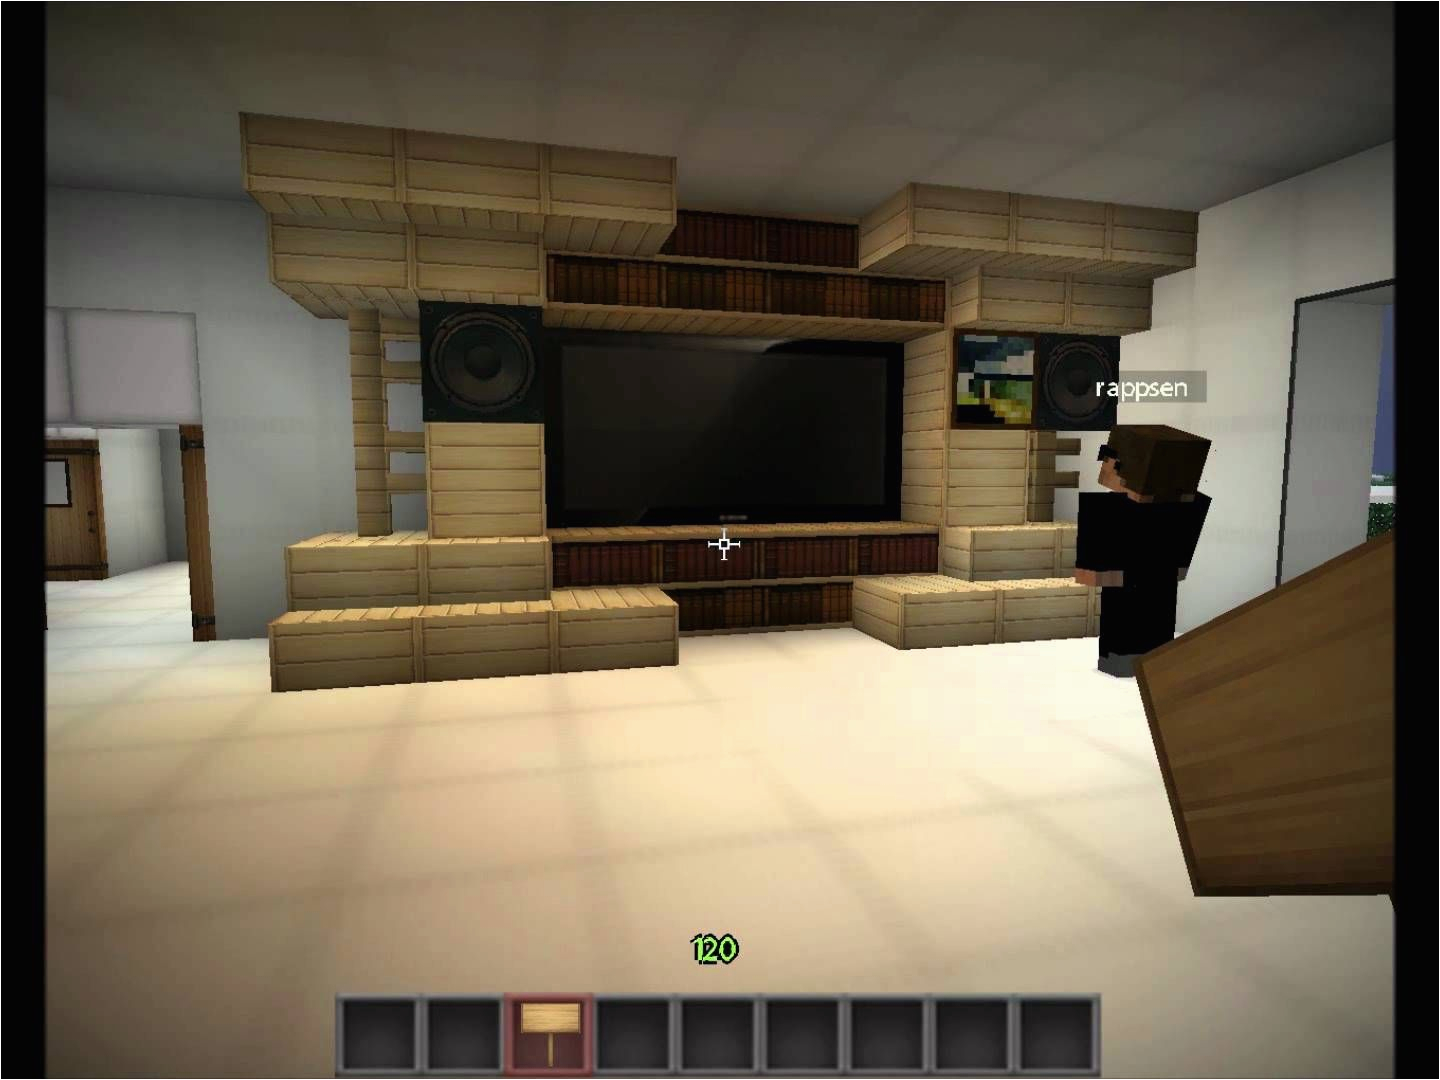 Minecraft Schlafzimmer Einrichten Minecraft Inneneinrichtung Wohnzimmer Wohndesign Ideen